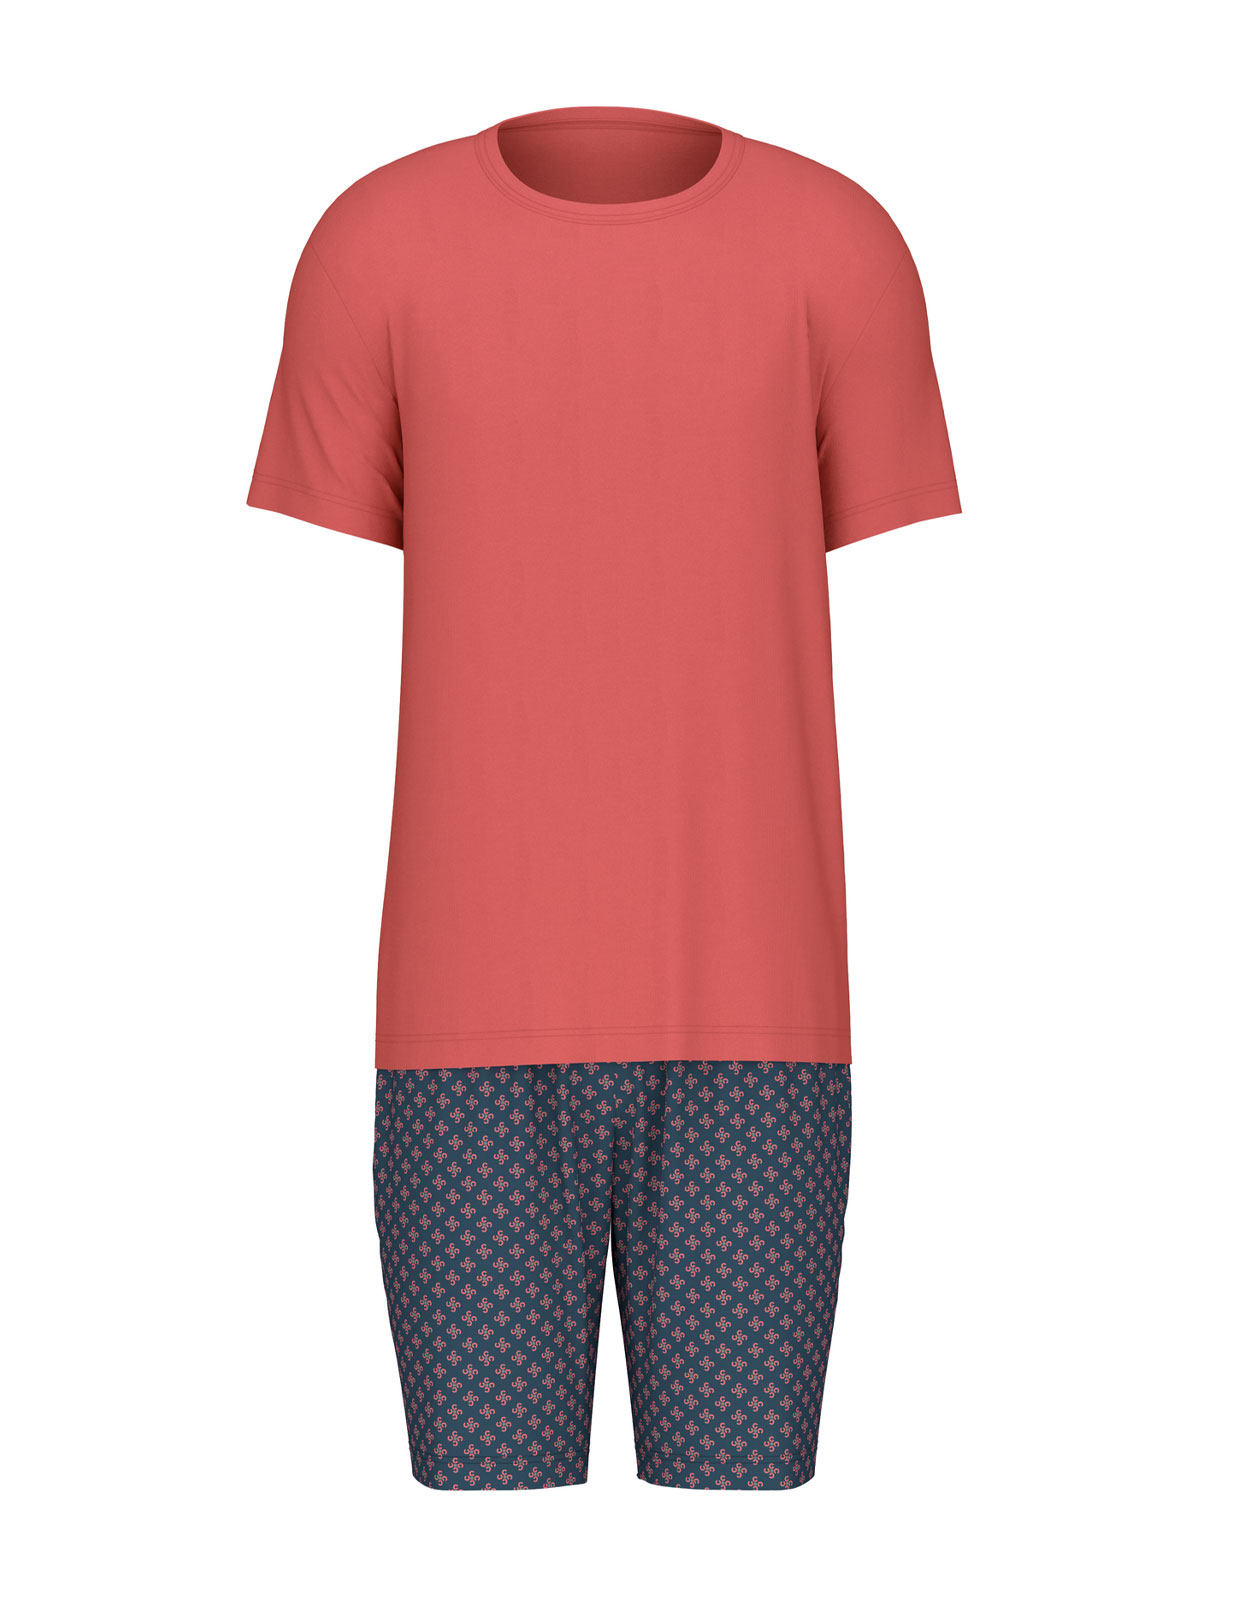 Pyjamas Röd/Blå Stl L